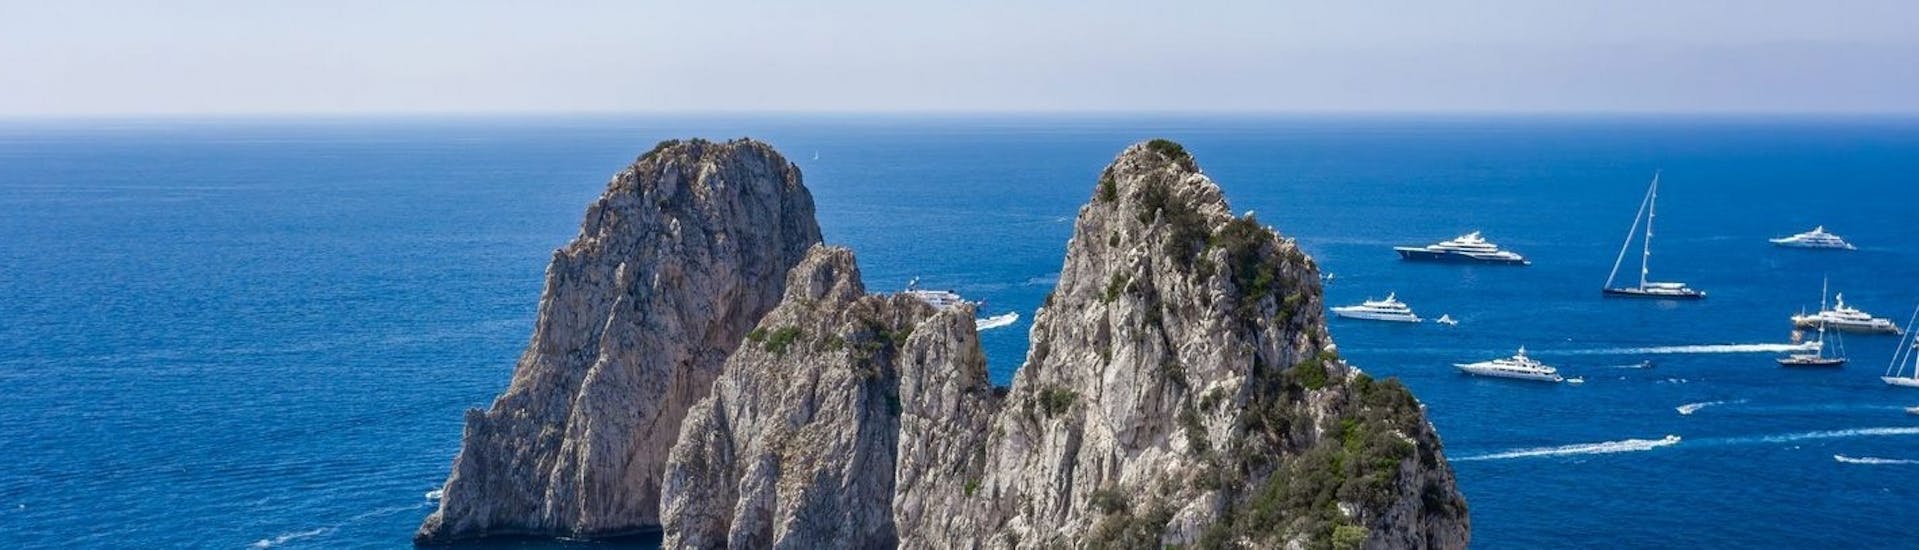 Uitzicht op de Faraglioni di Capri die je kunt bewonderen tijdens de boottocht van Capri naar de Blauwe Grot met Fiore Sea Excursions Capri.